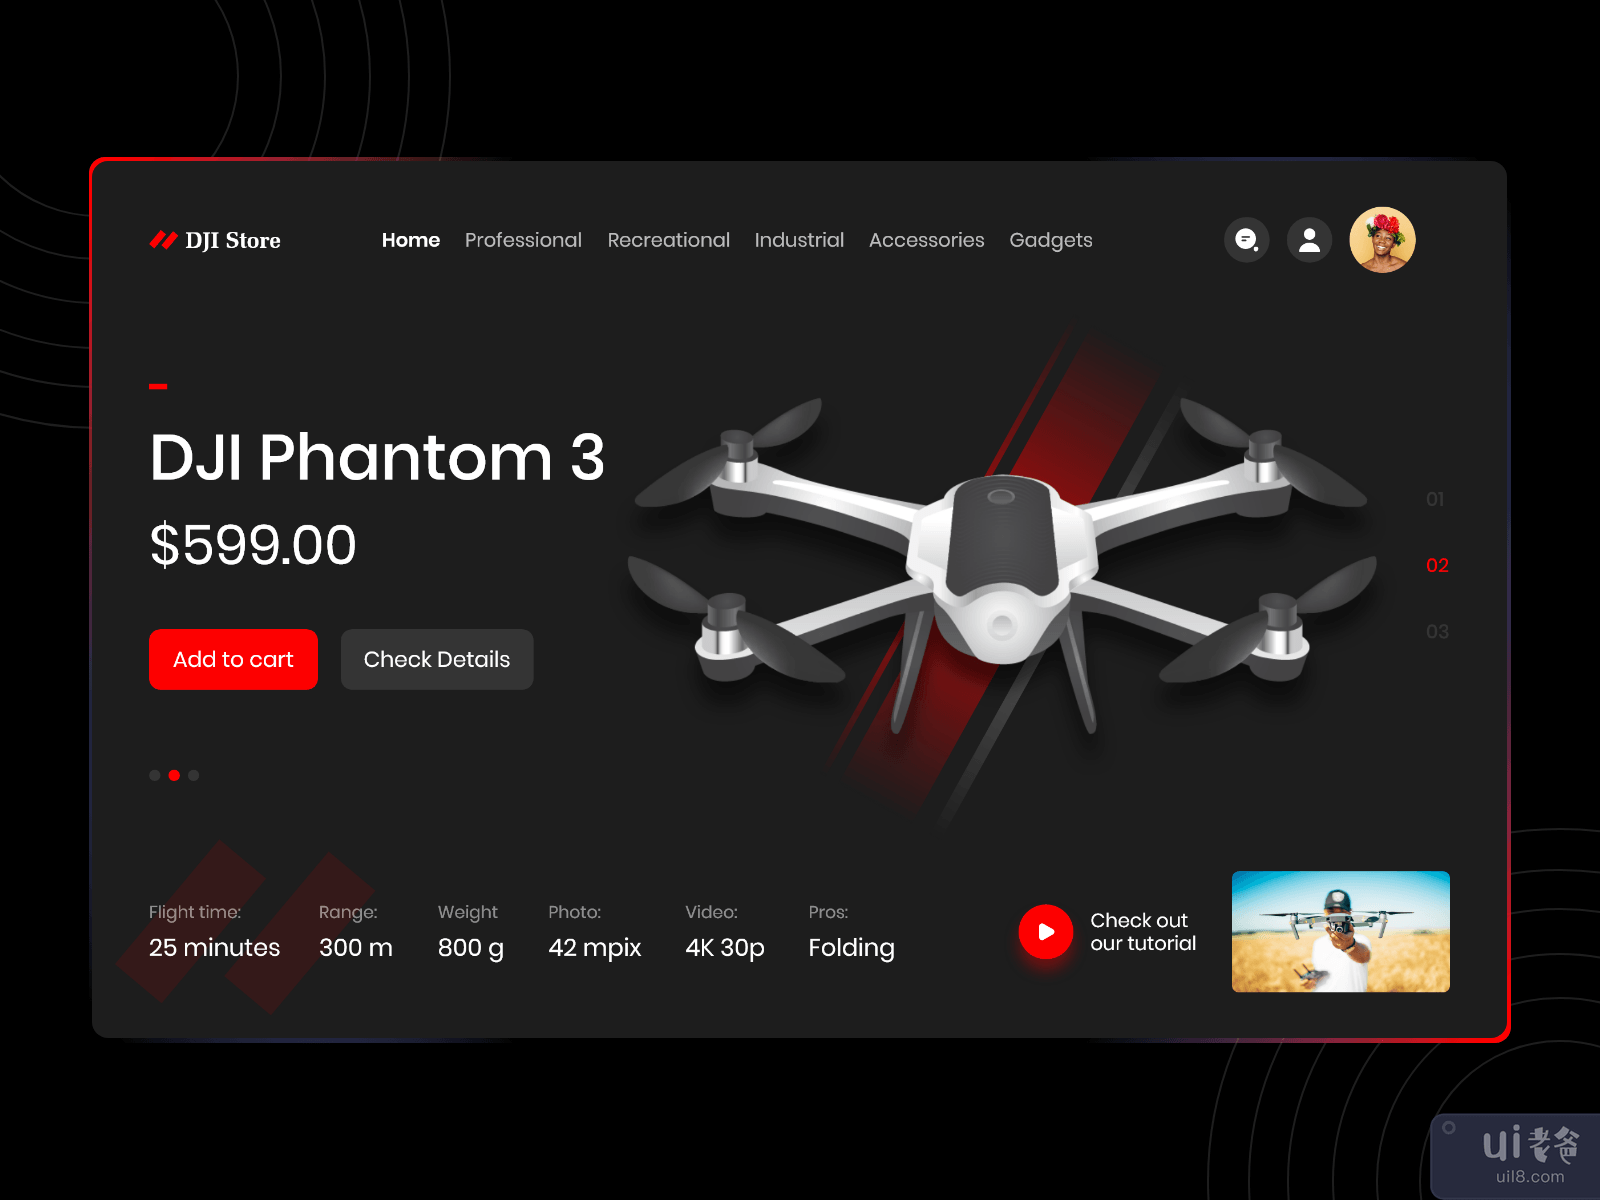 无人机 - DJI 大疆商城(Drone - DJI Store)插图1